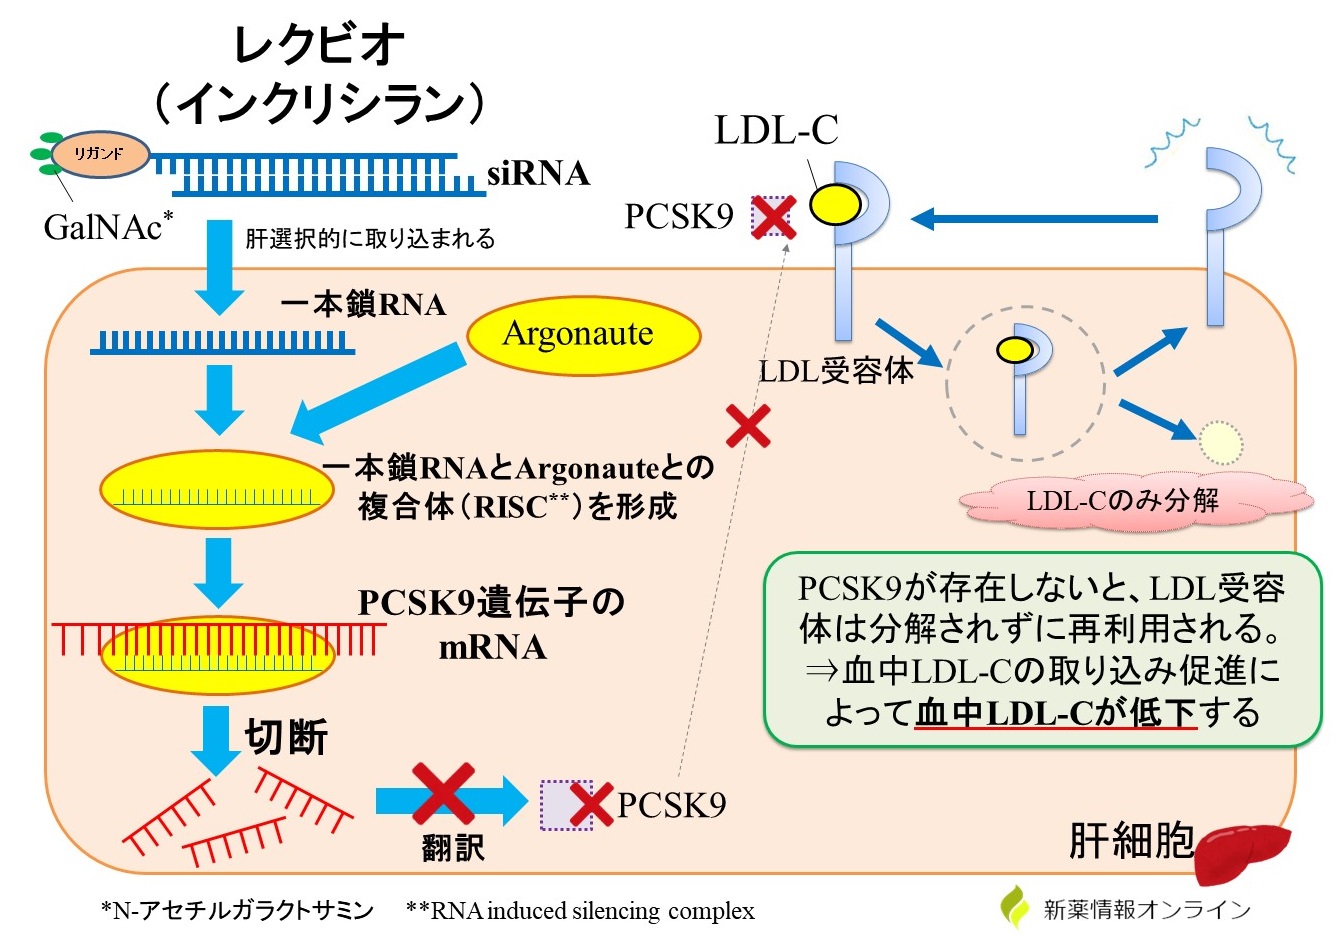 レクビオ（インクリシラン）の構造と作用機序：RNA干渉によってPCSK9の合成を阻害することで、LDLコレステロールの降下作用を示す